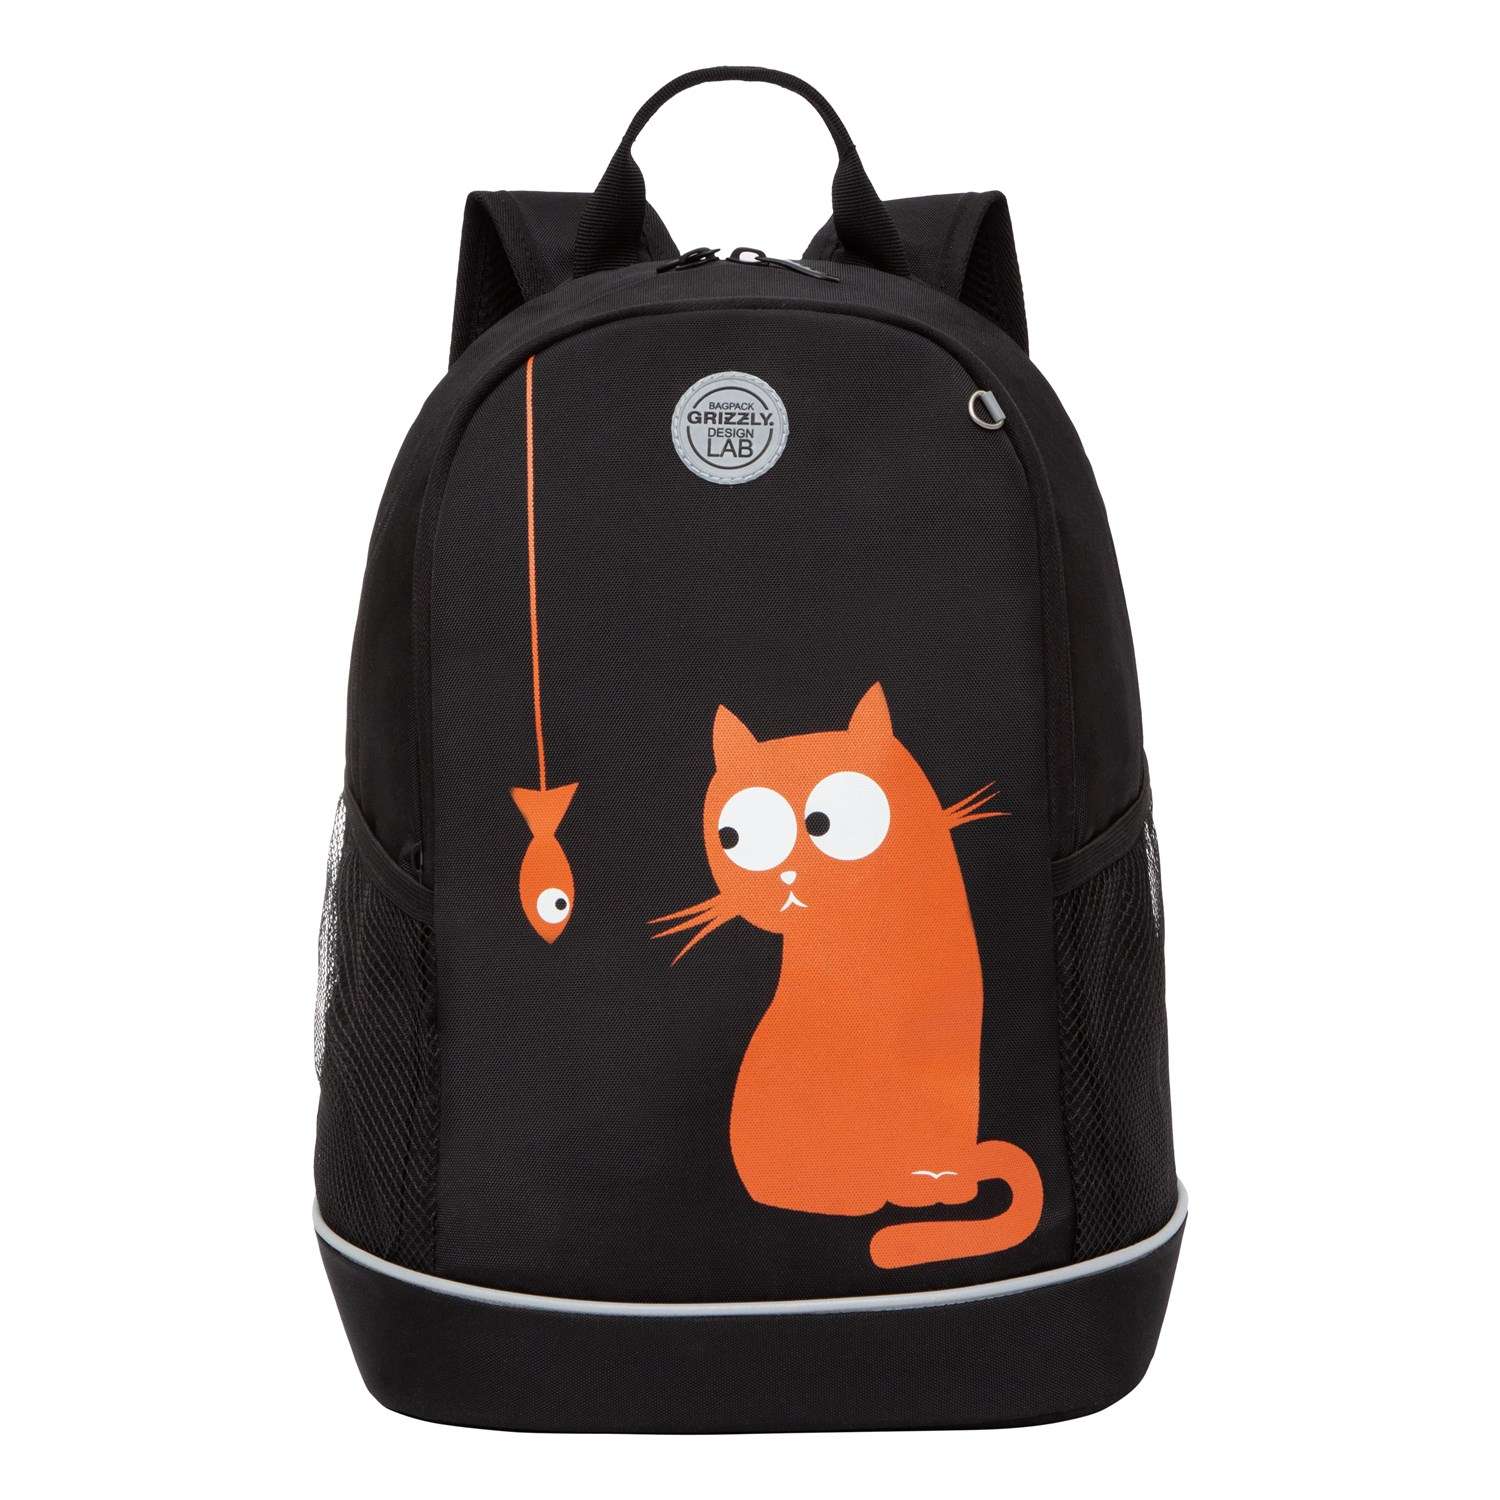 Рюкзак школьный Grizzly Черный-Оранжевый RG-263-4/4 - фото 2